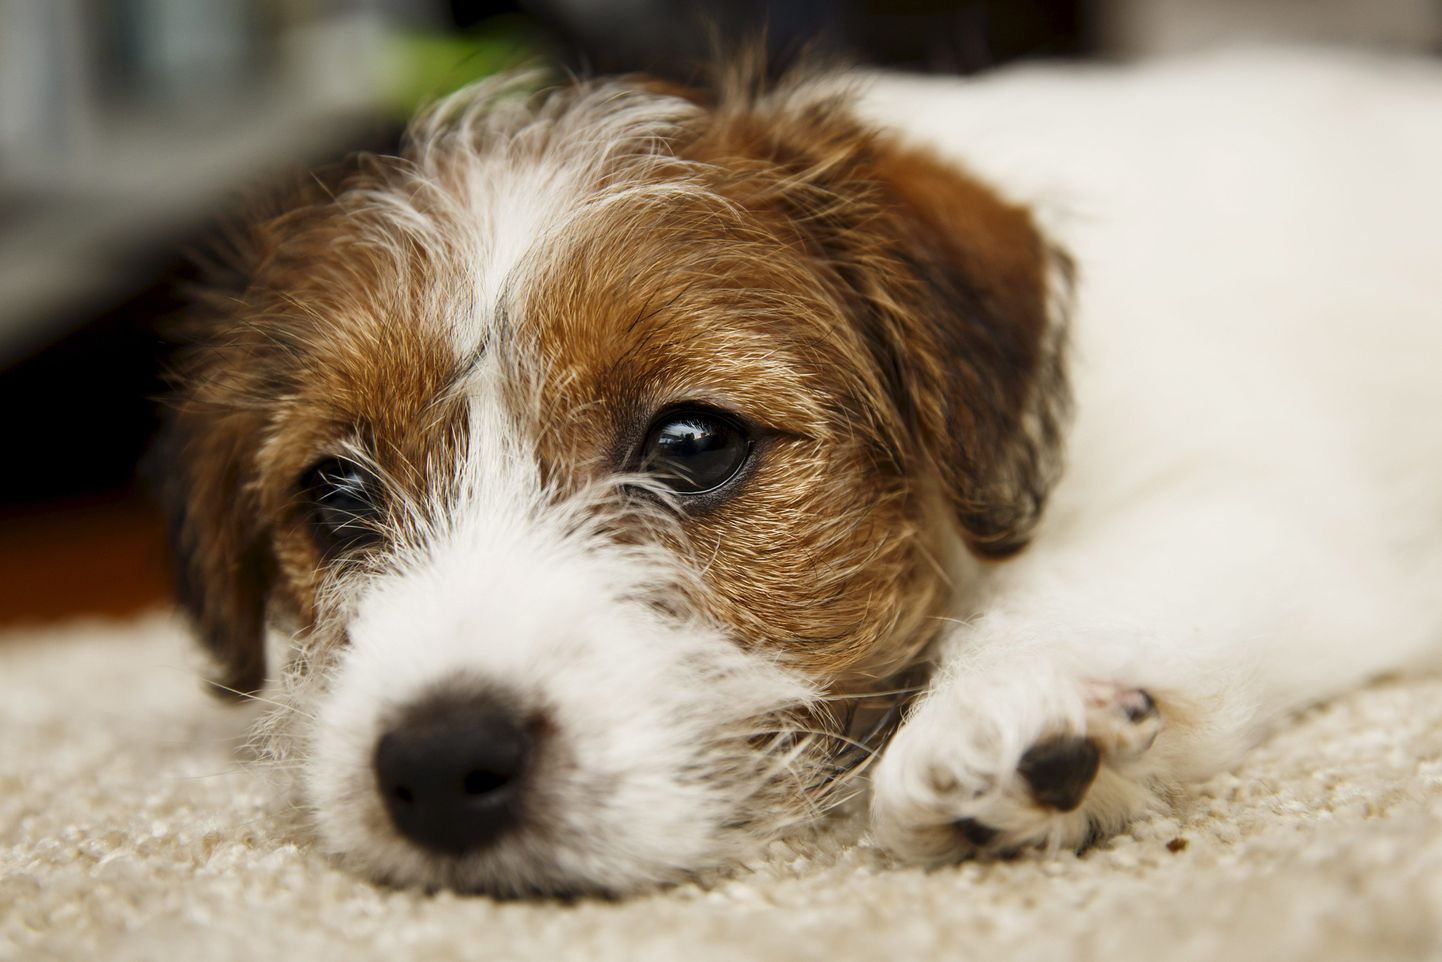 Jack russel on üks enam kui kolmekümnest koeratõust, kelle seas esineb kurtust sagedamini